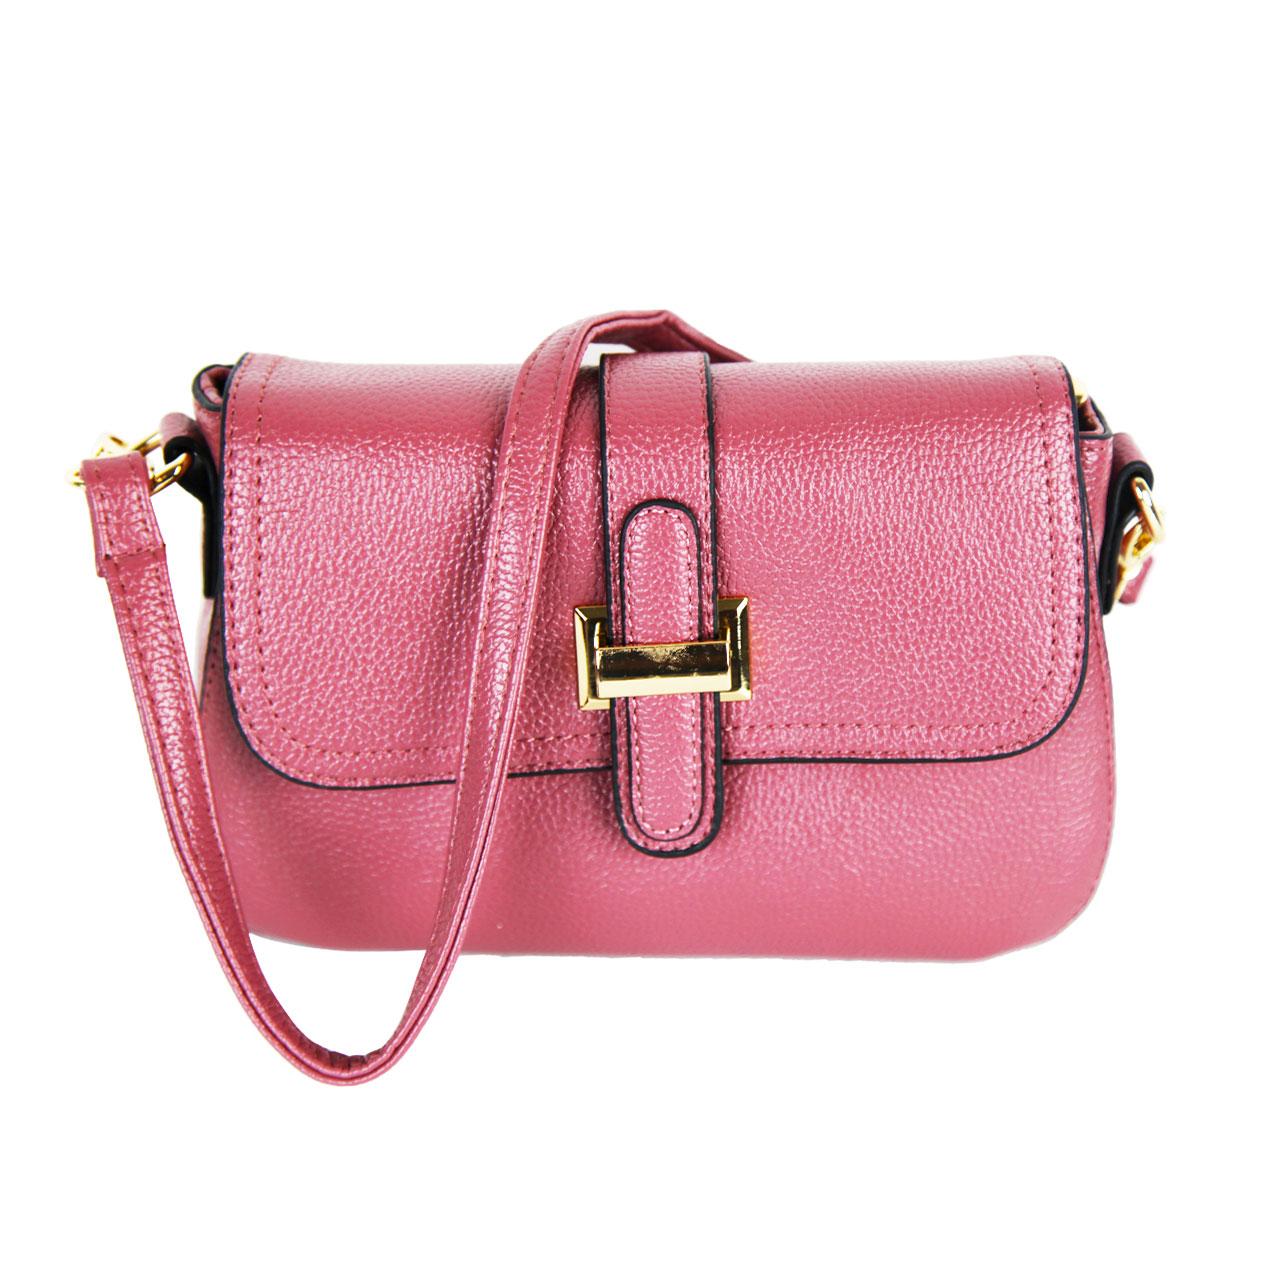 Leather Mini Clutch Bag | Cross-body Bag For Women in USA | Zeekas